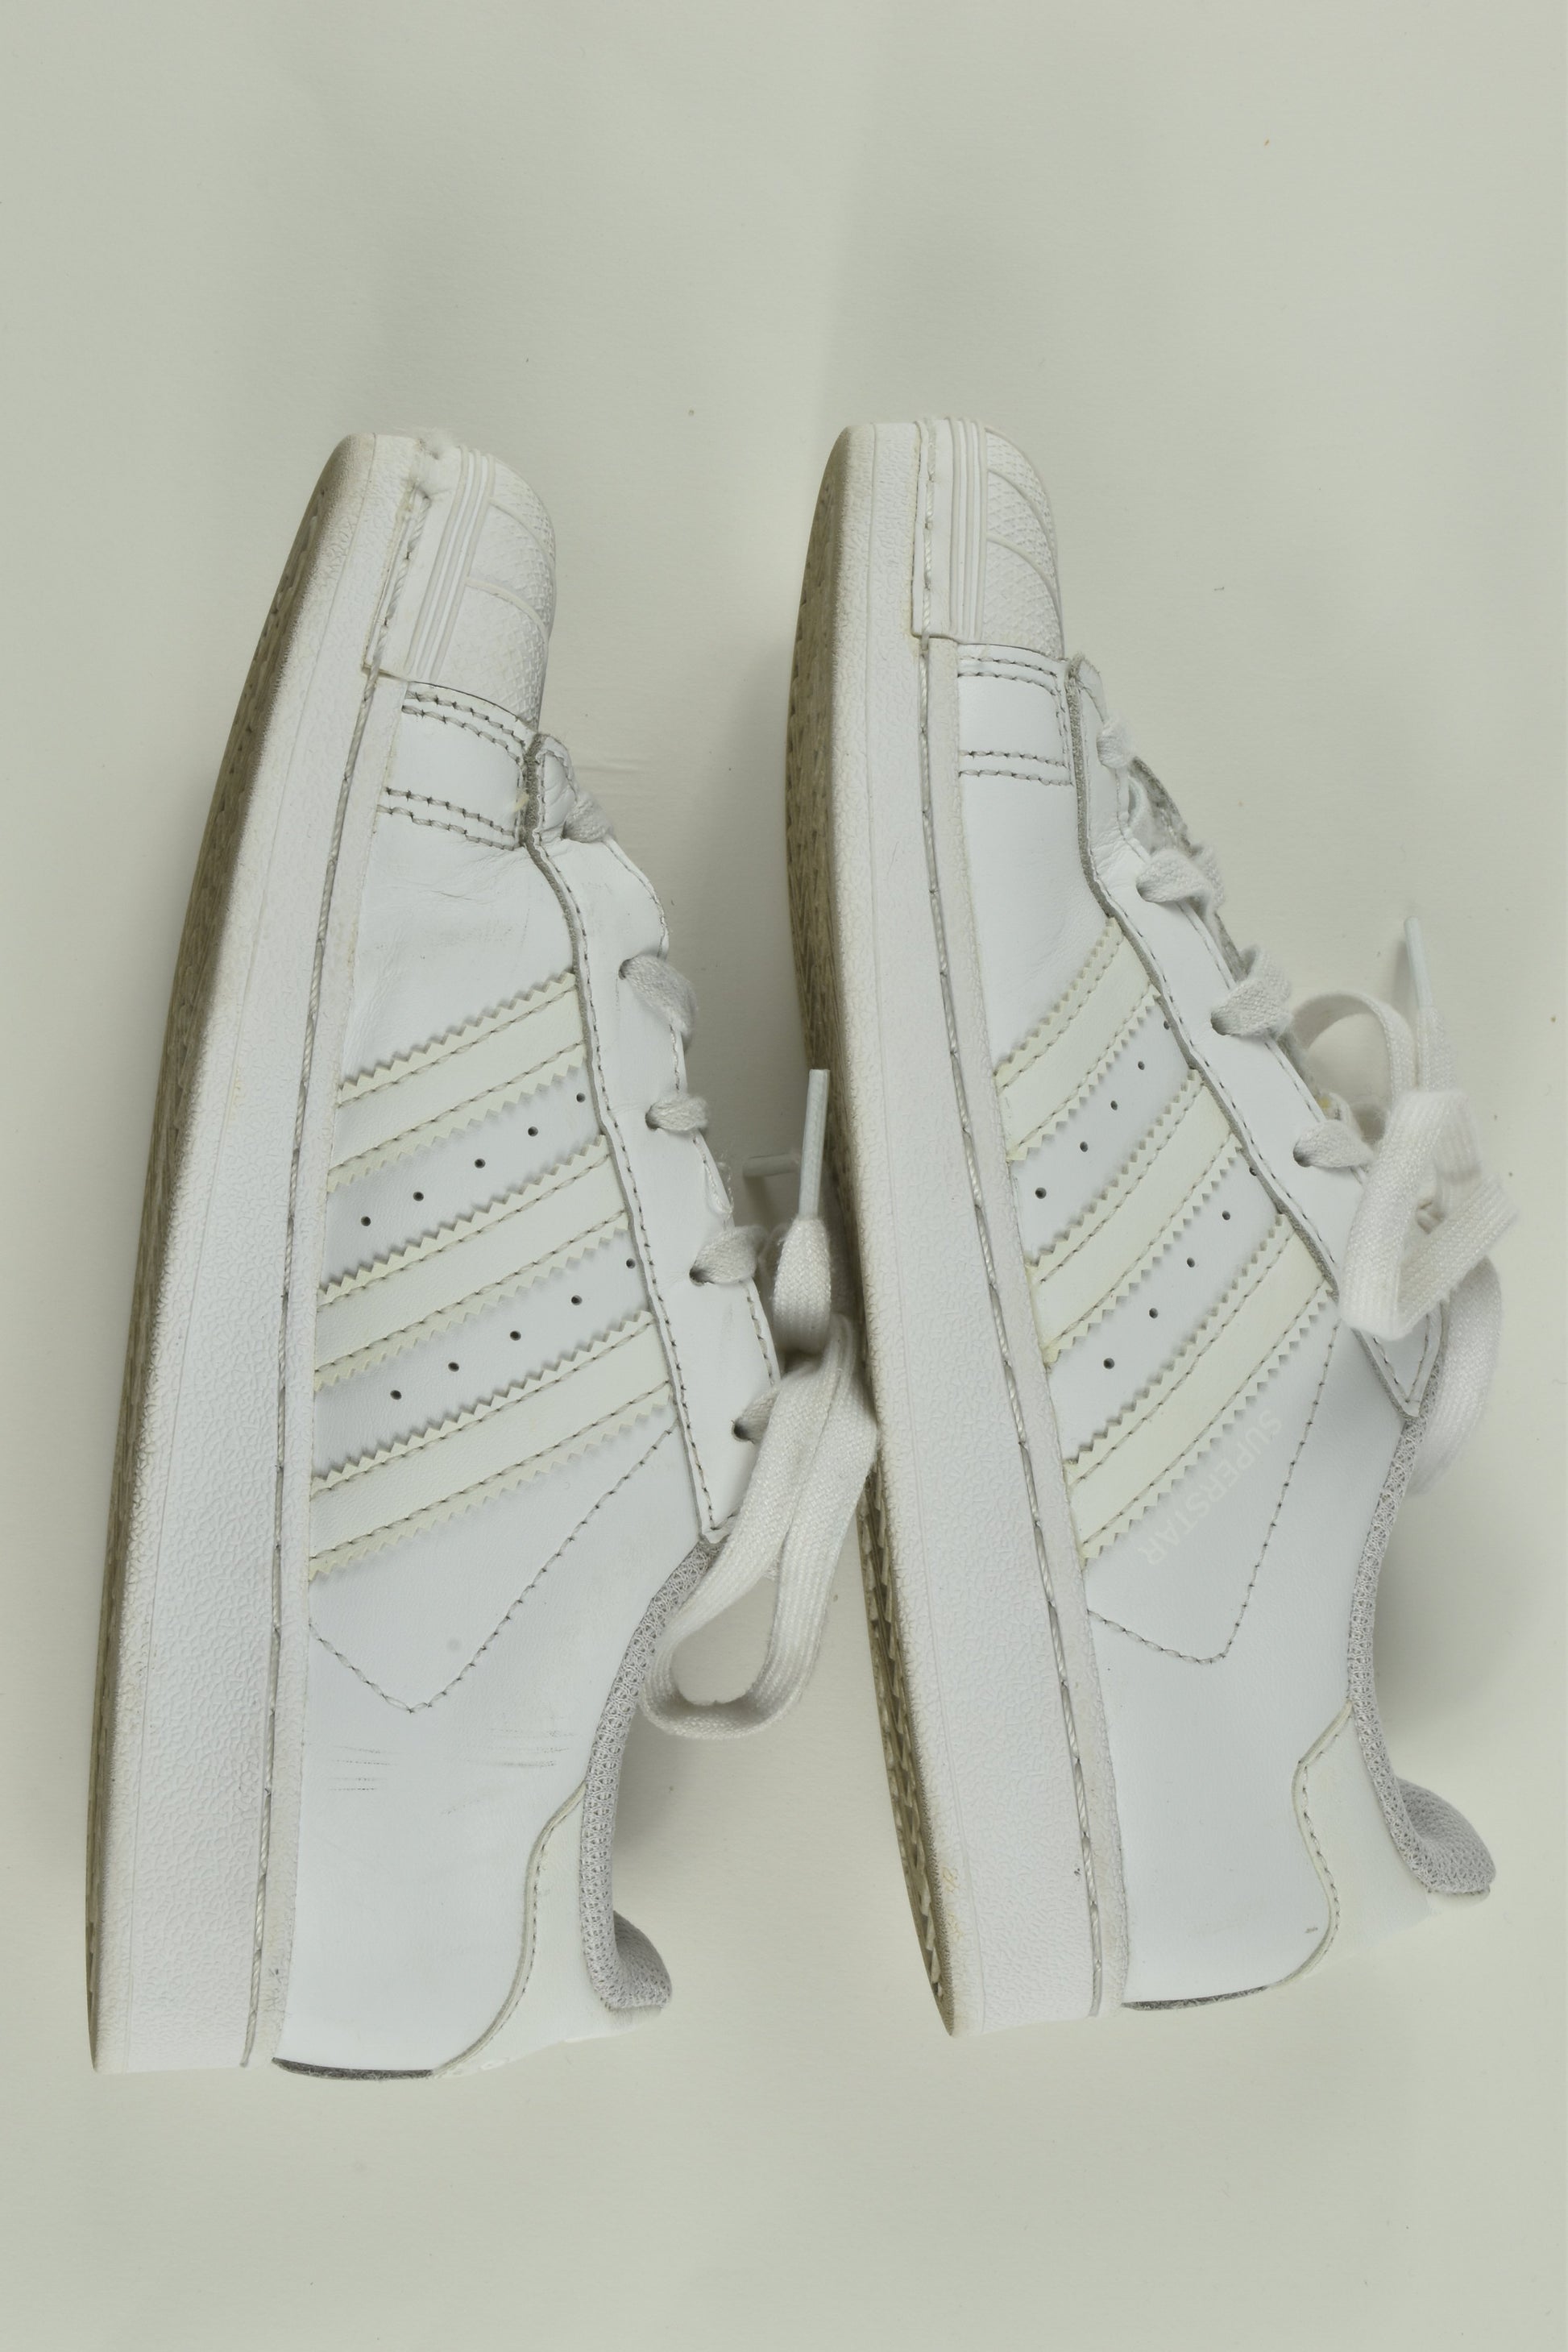 Adidas Superstar Size UK 1 White Shoes